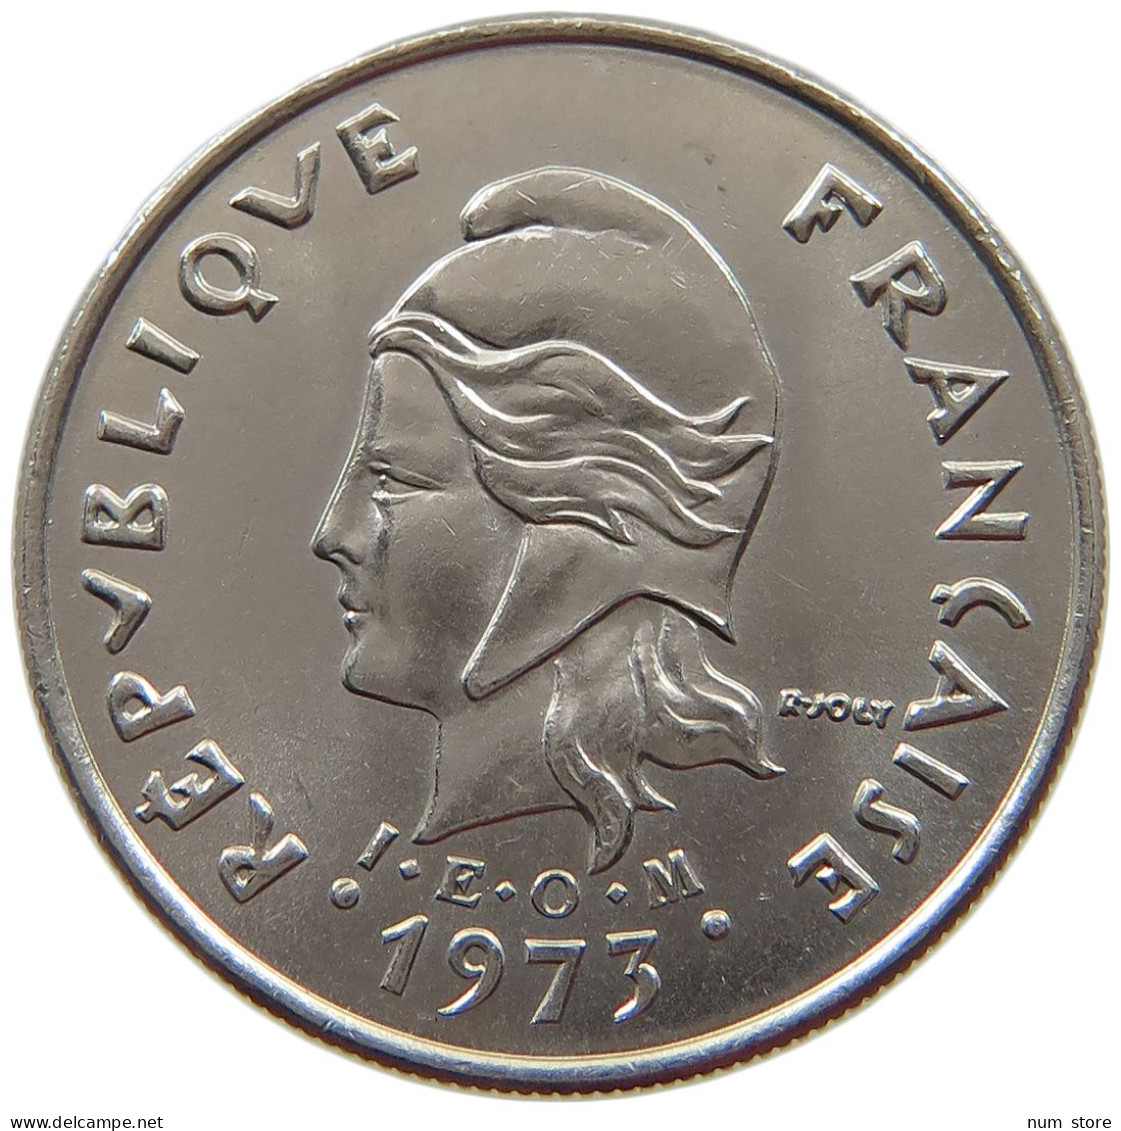 POLYNESIA 10 FRANCS 1973  #s065 0391 - French Polynesia